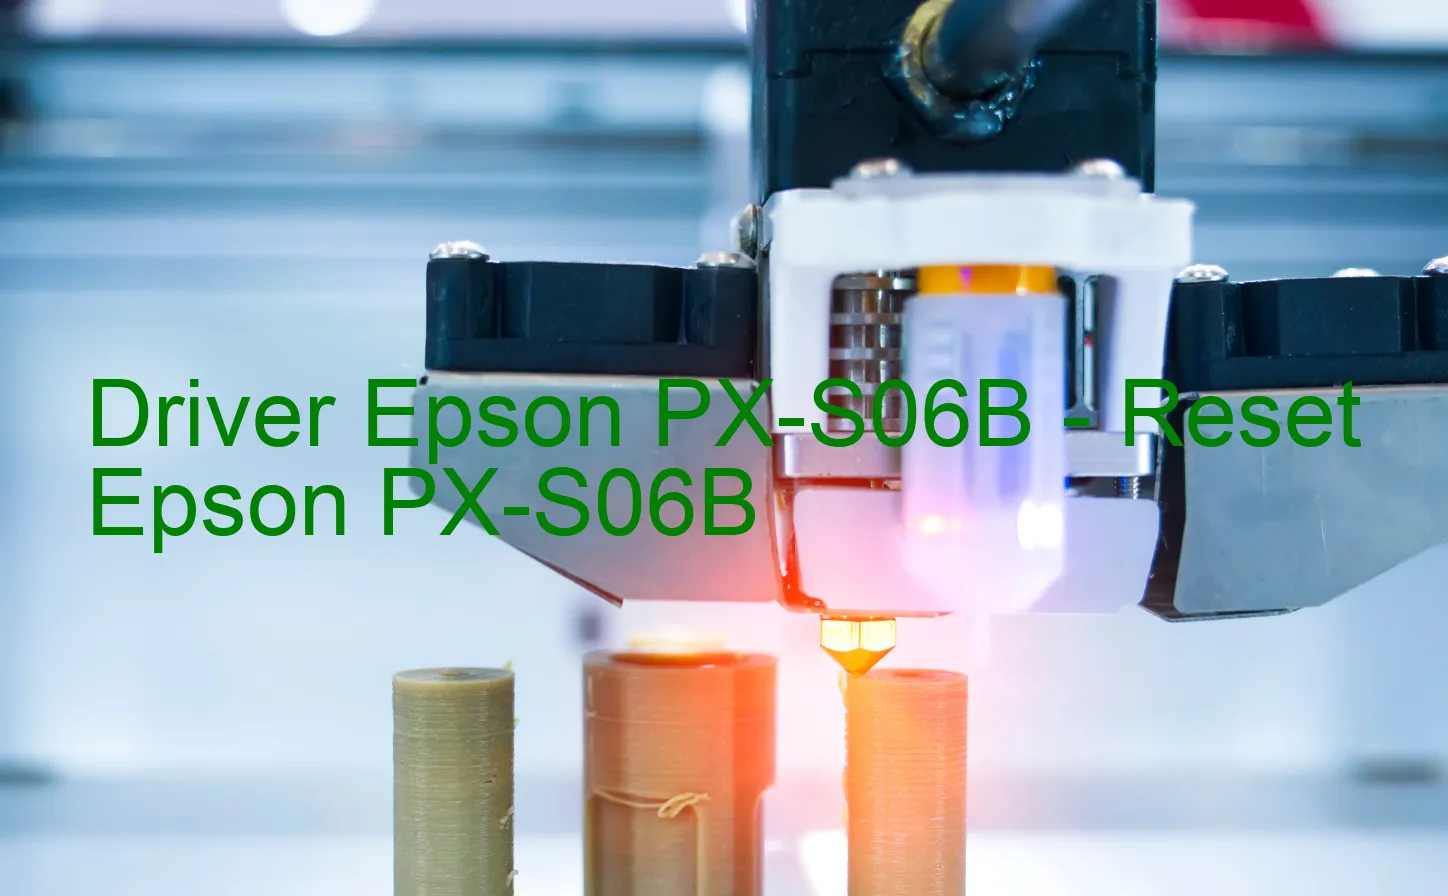 Epson PX-S06Bのドライバー、Epson PX-S06Bのリセットソフトウェア